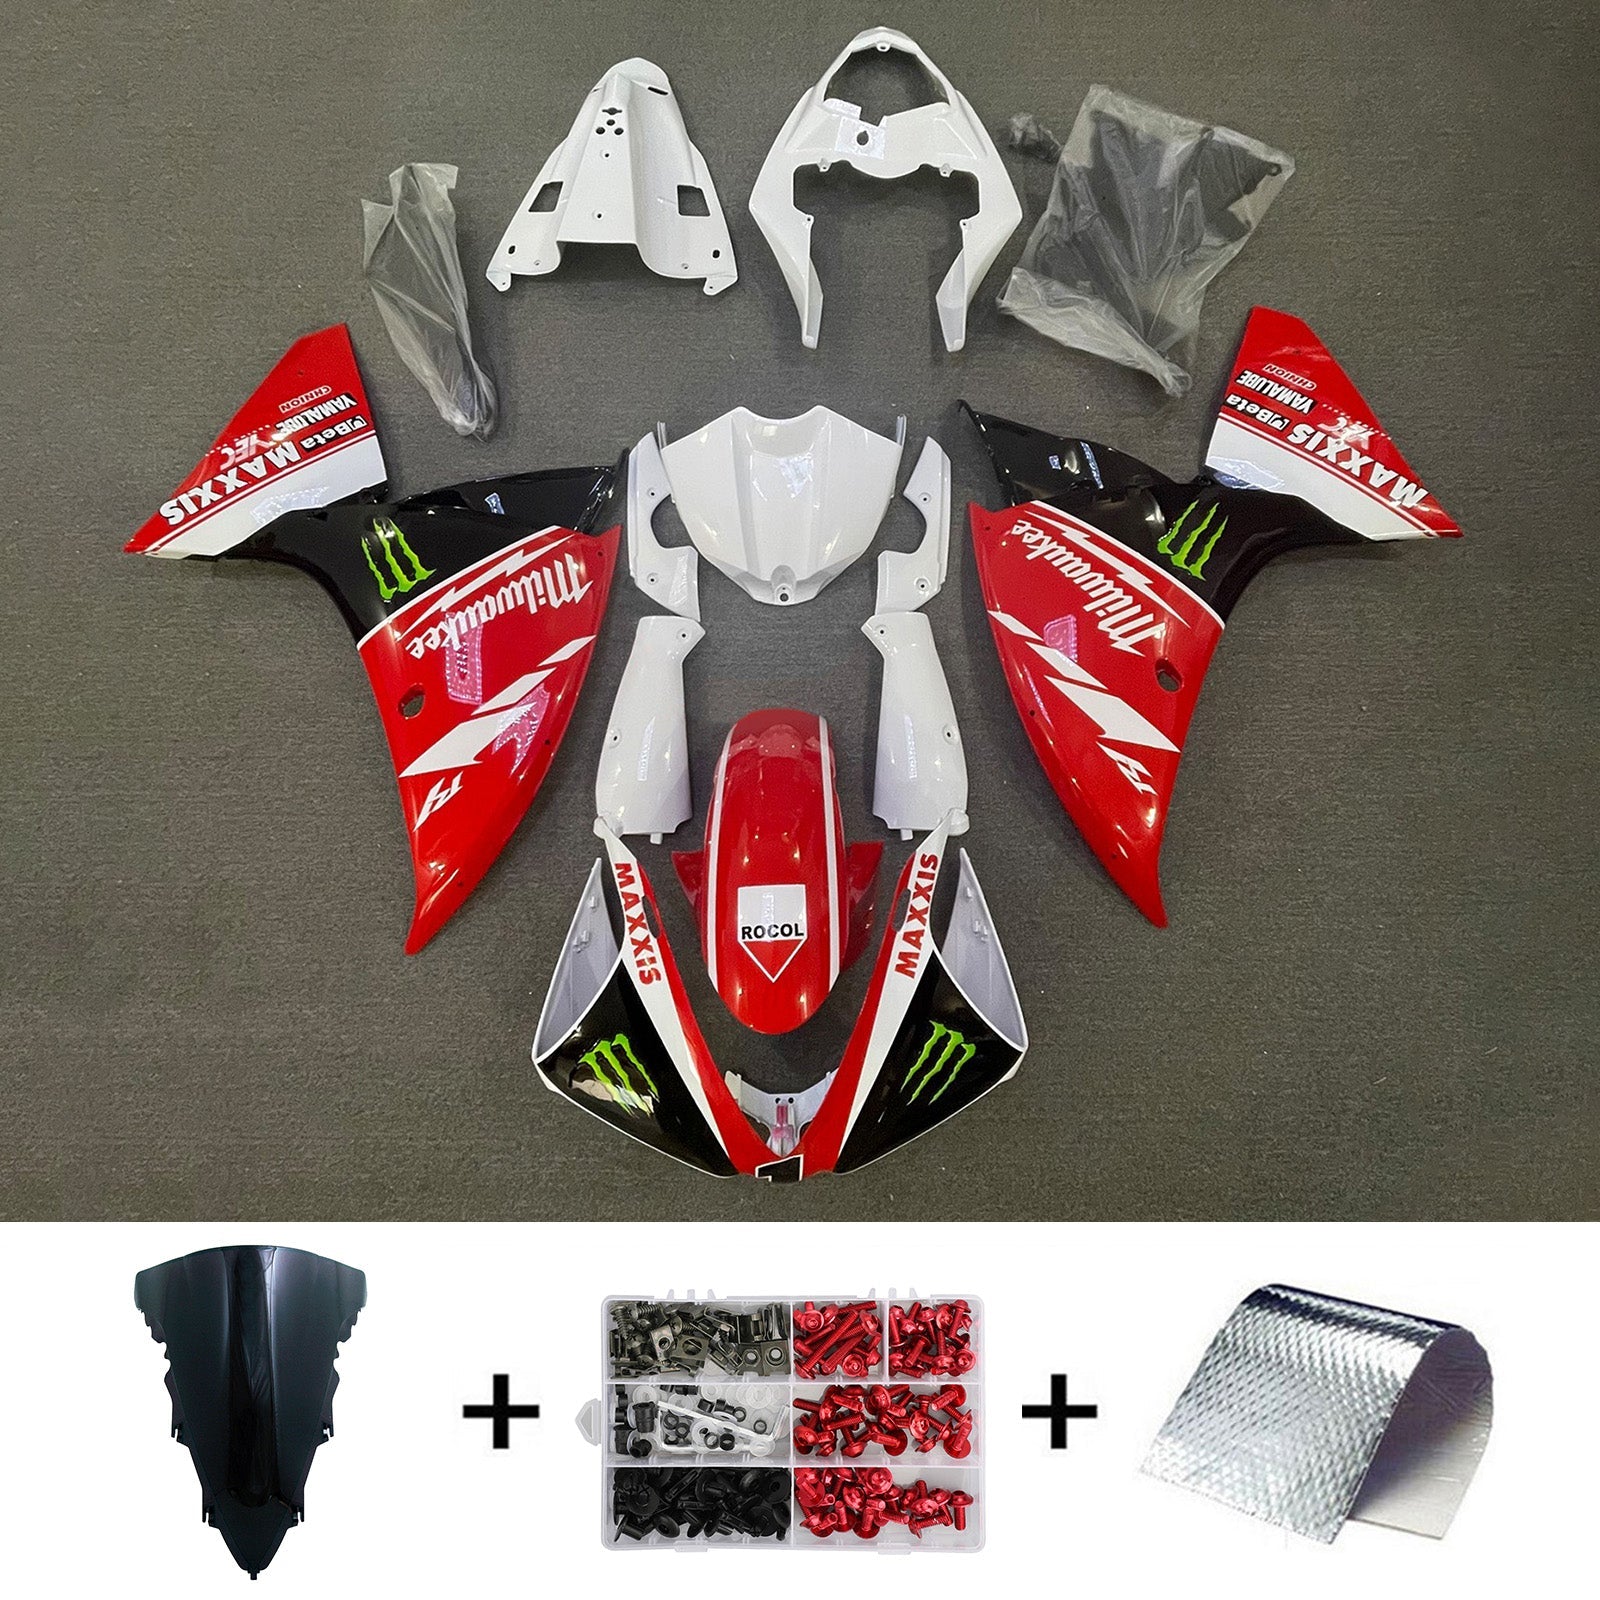 Kit de carénage d'injection Yamaha YZF-R1 2012-2014, carrosserie en plastique ABS